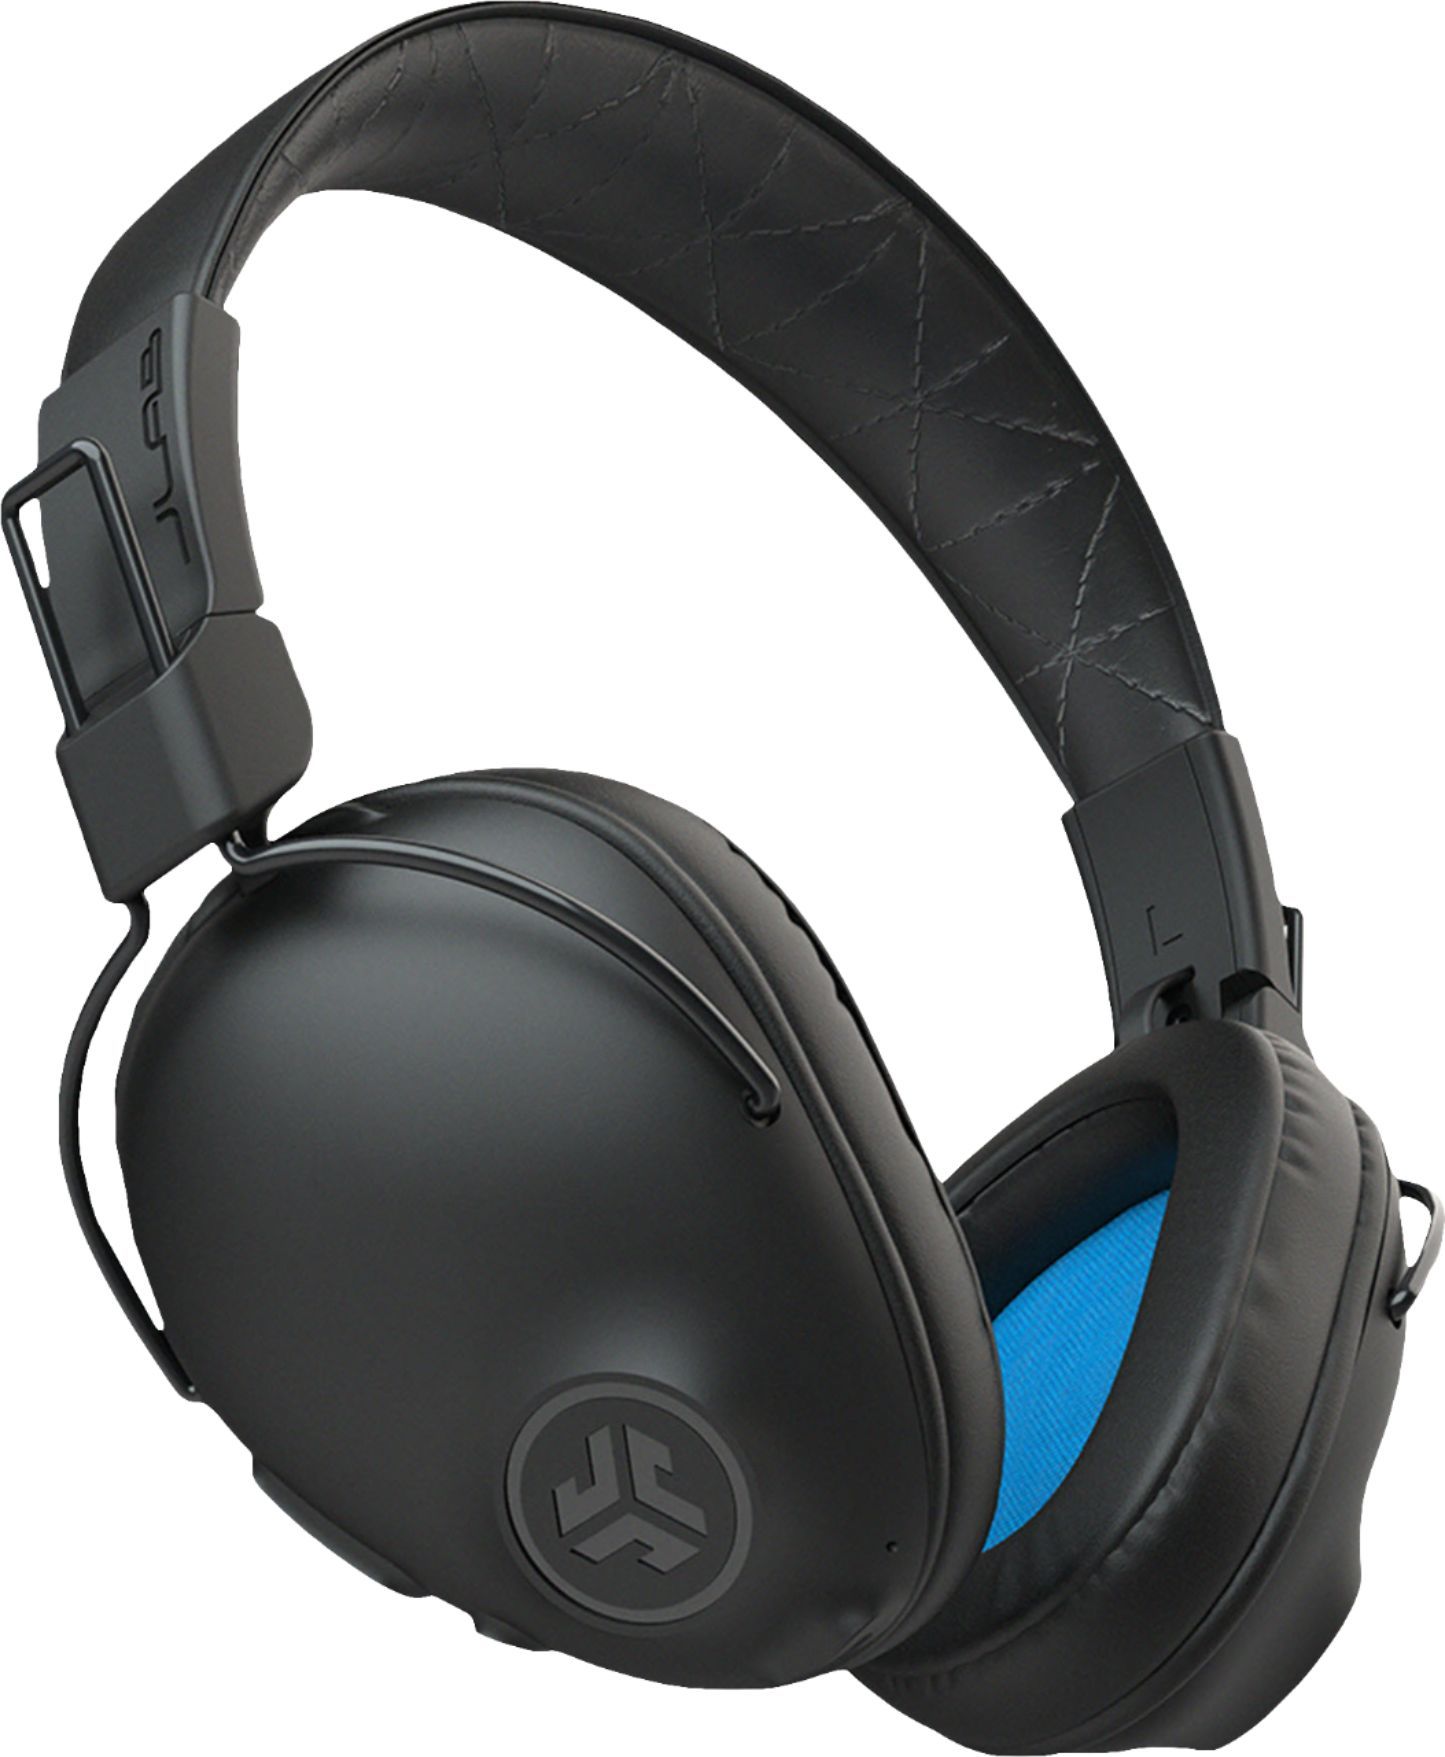 JLab Studio Pro Wireless Headphones Black HBASTUDIOPRORBLK4 - Best Buy | Best Buy U.S.